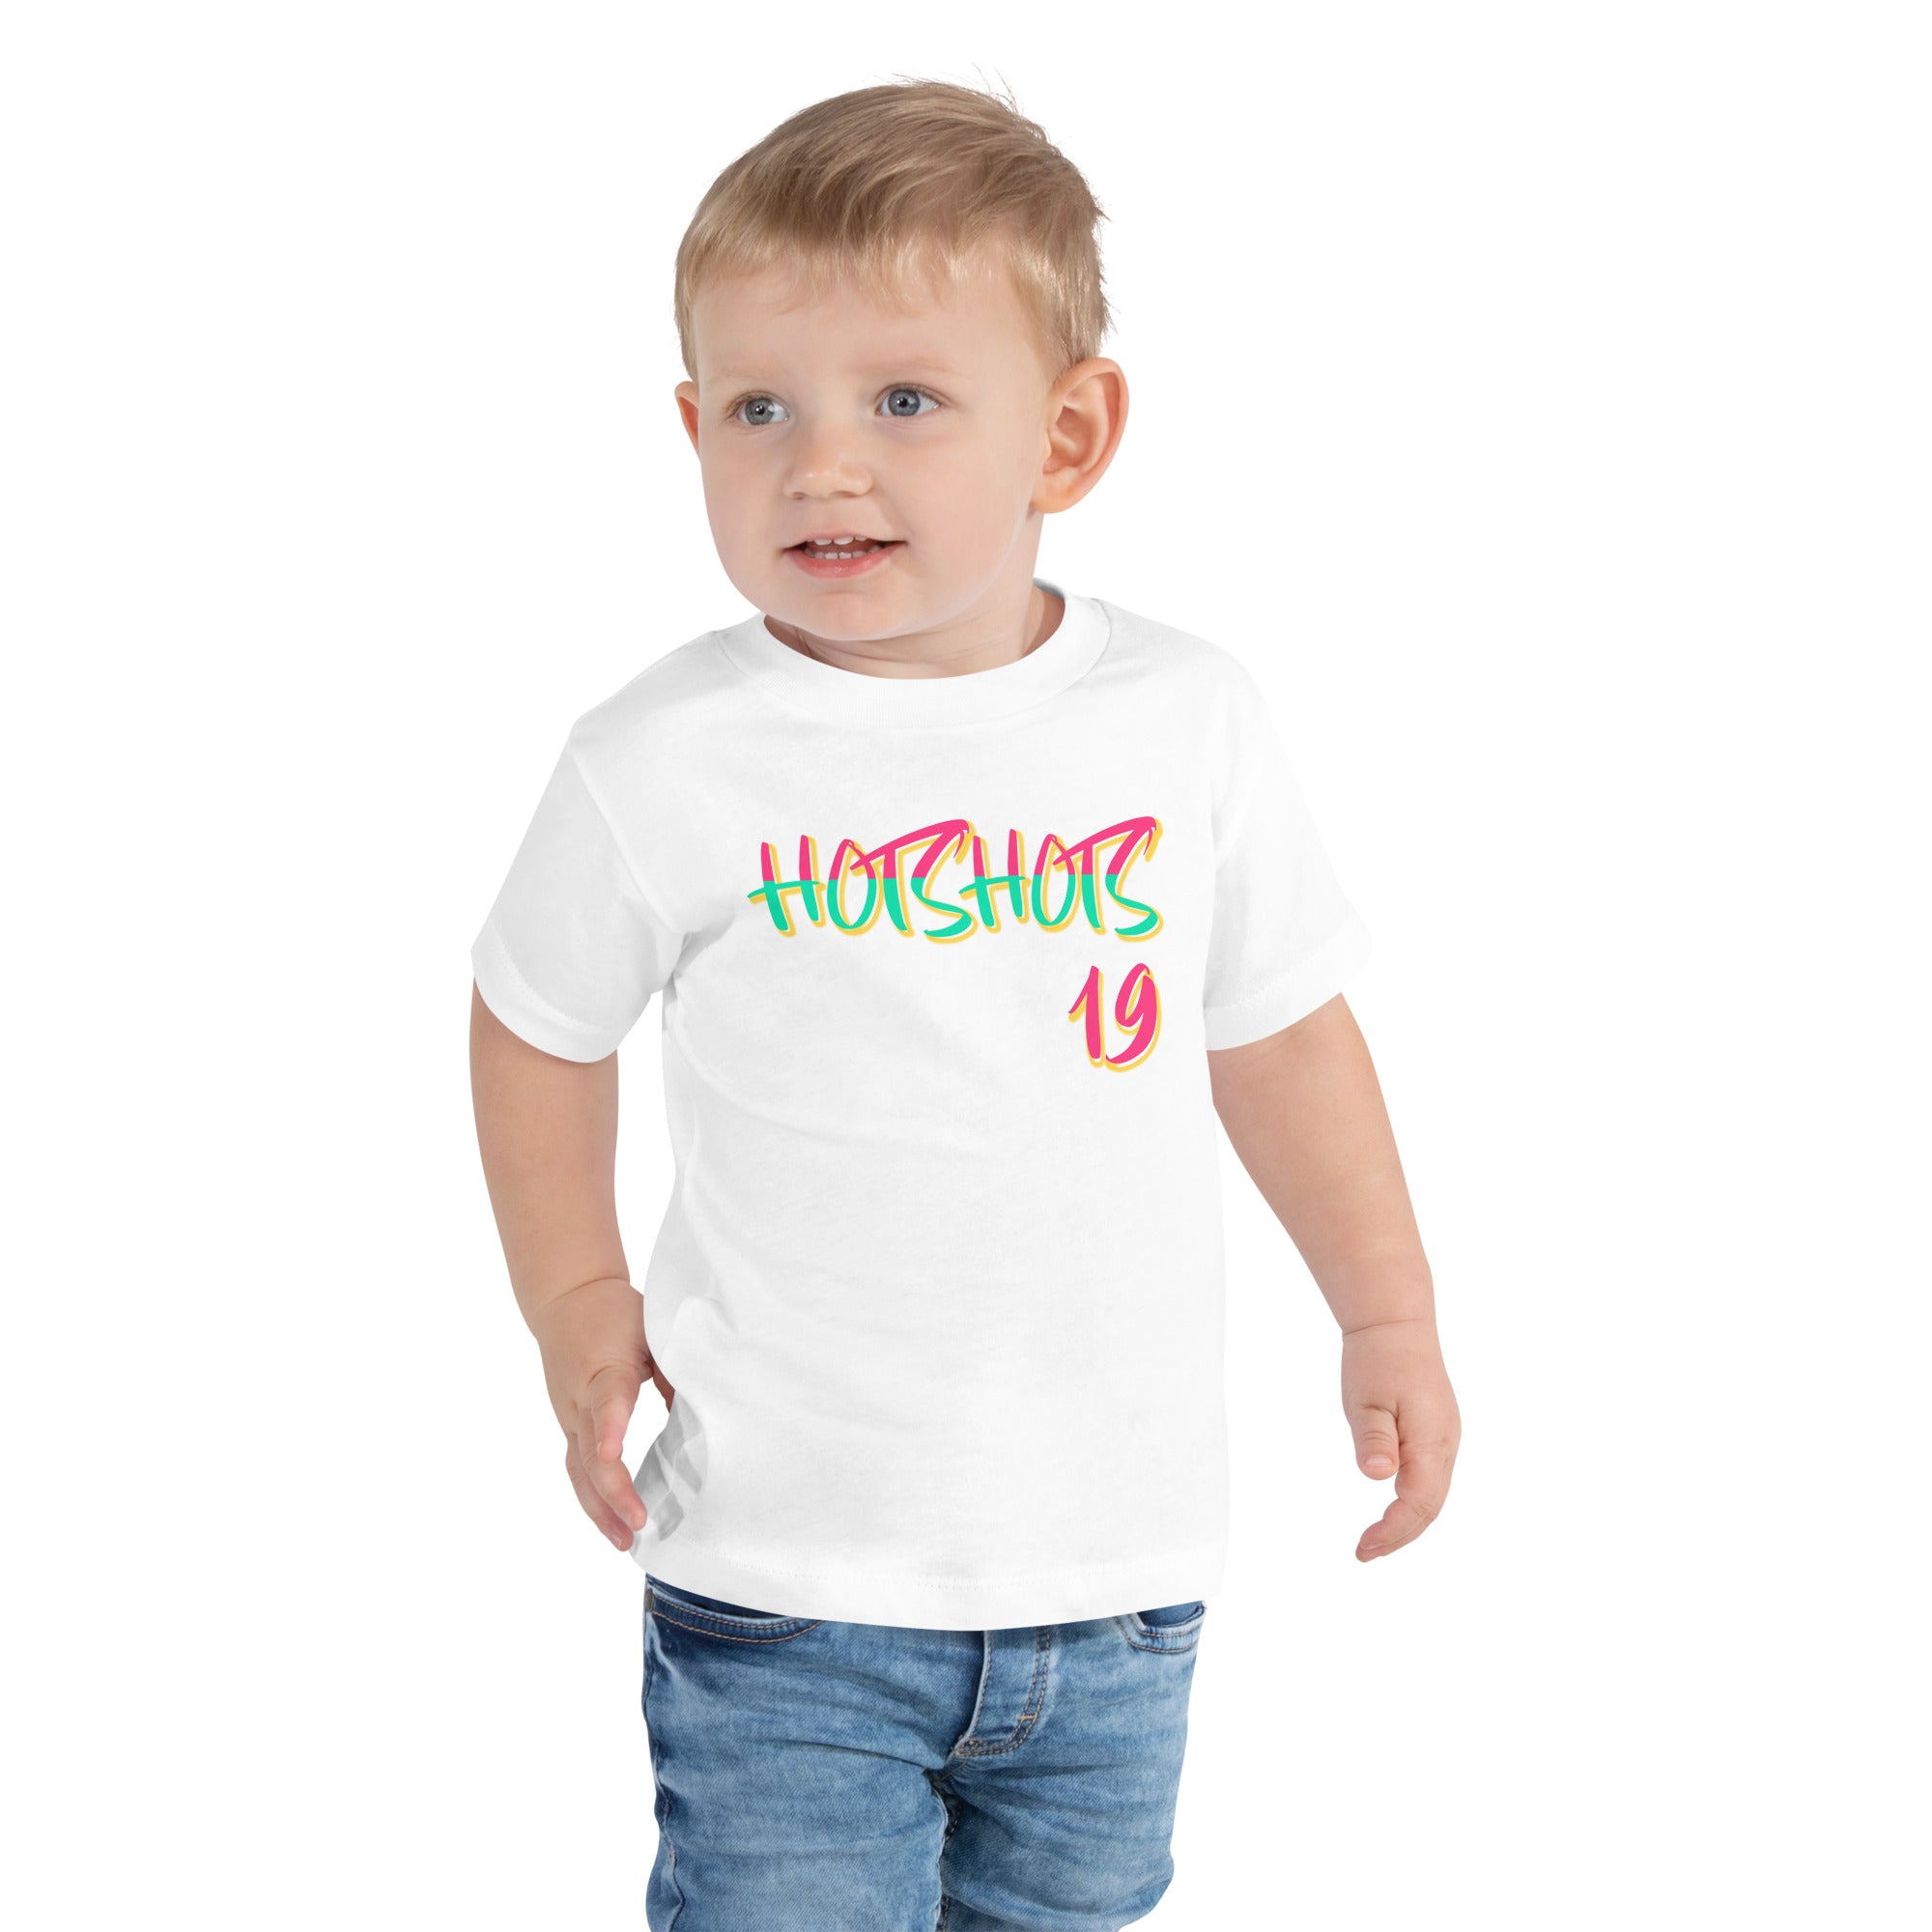 Hotshots 22 Toddler Short Sleeve Tee